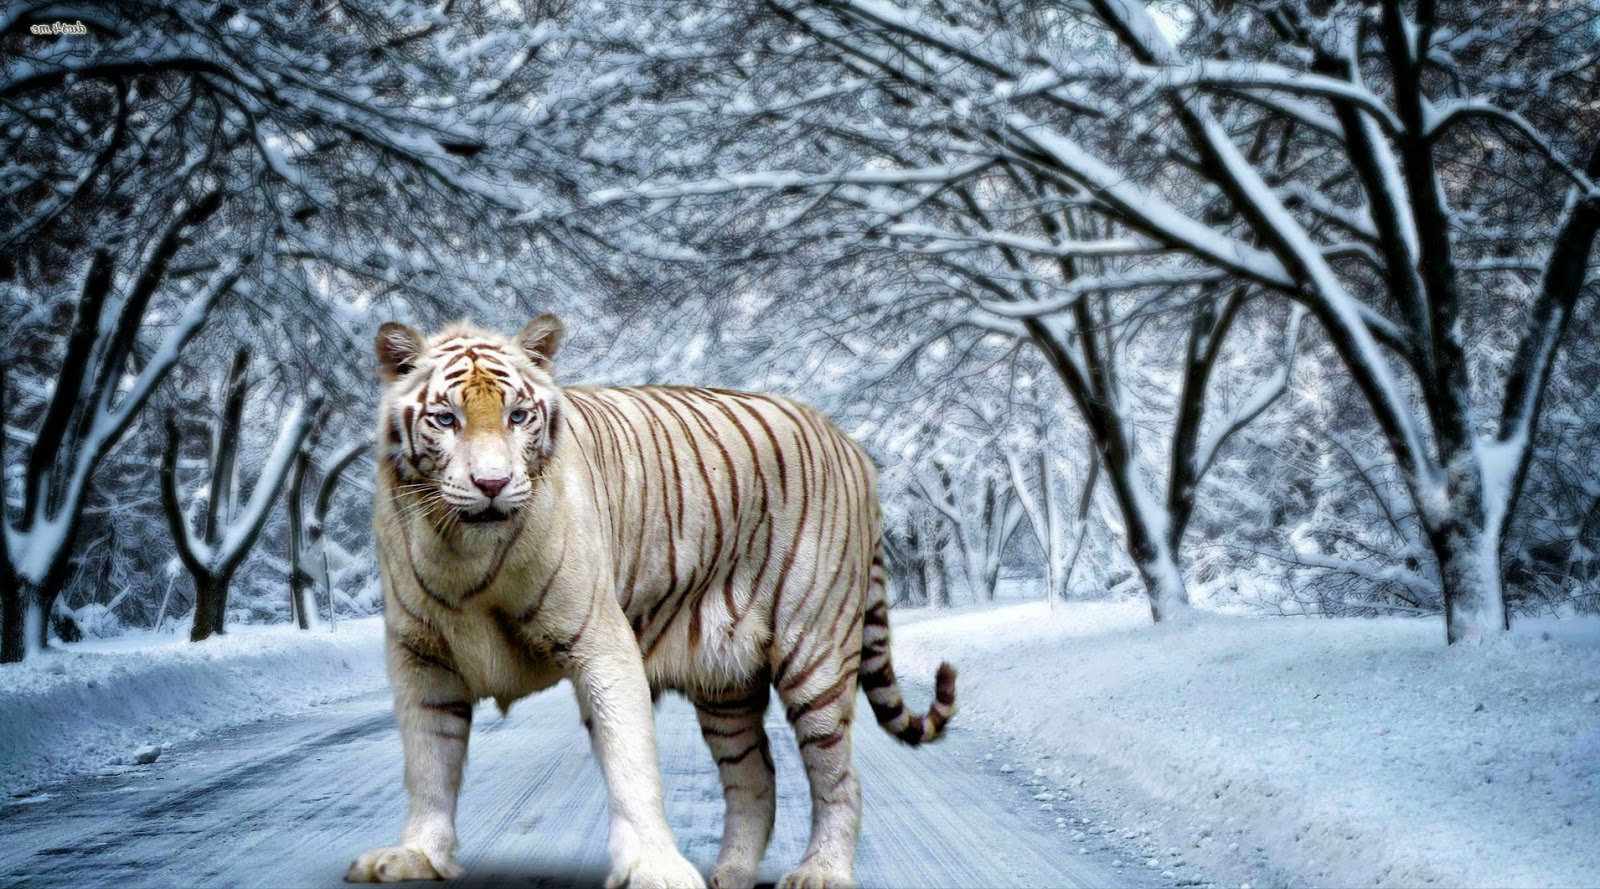  Gambar  Harimau  Terbaru Kumpulan Gambar 